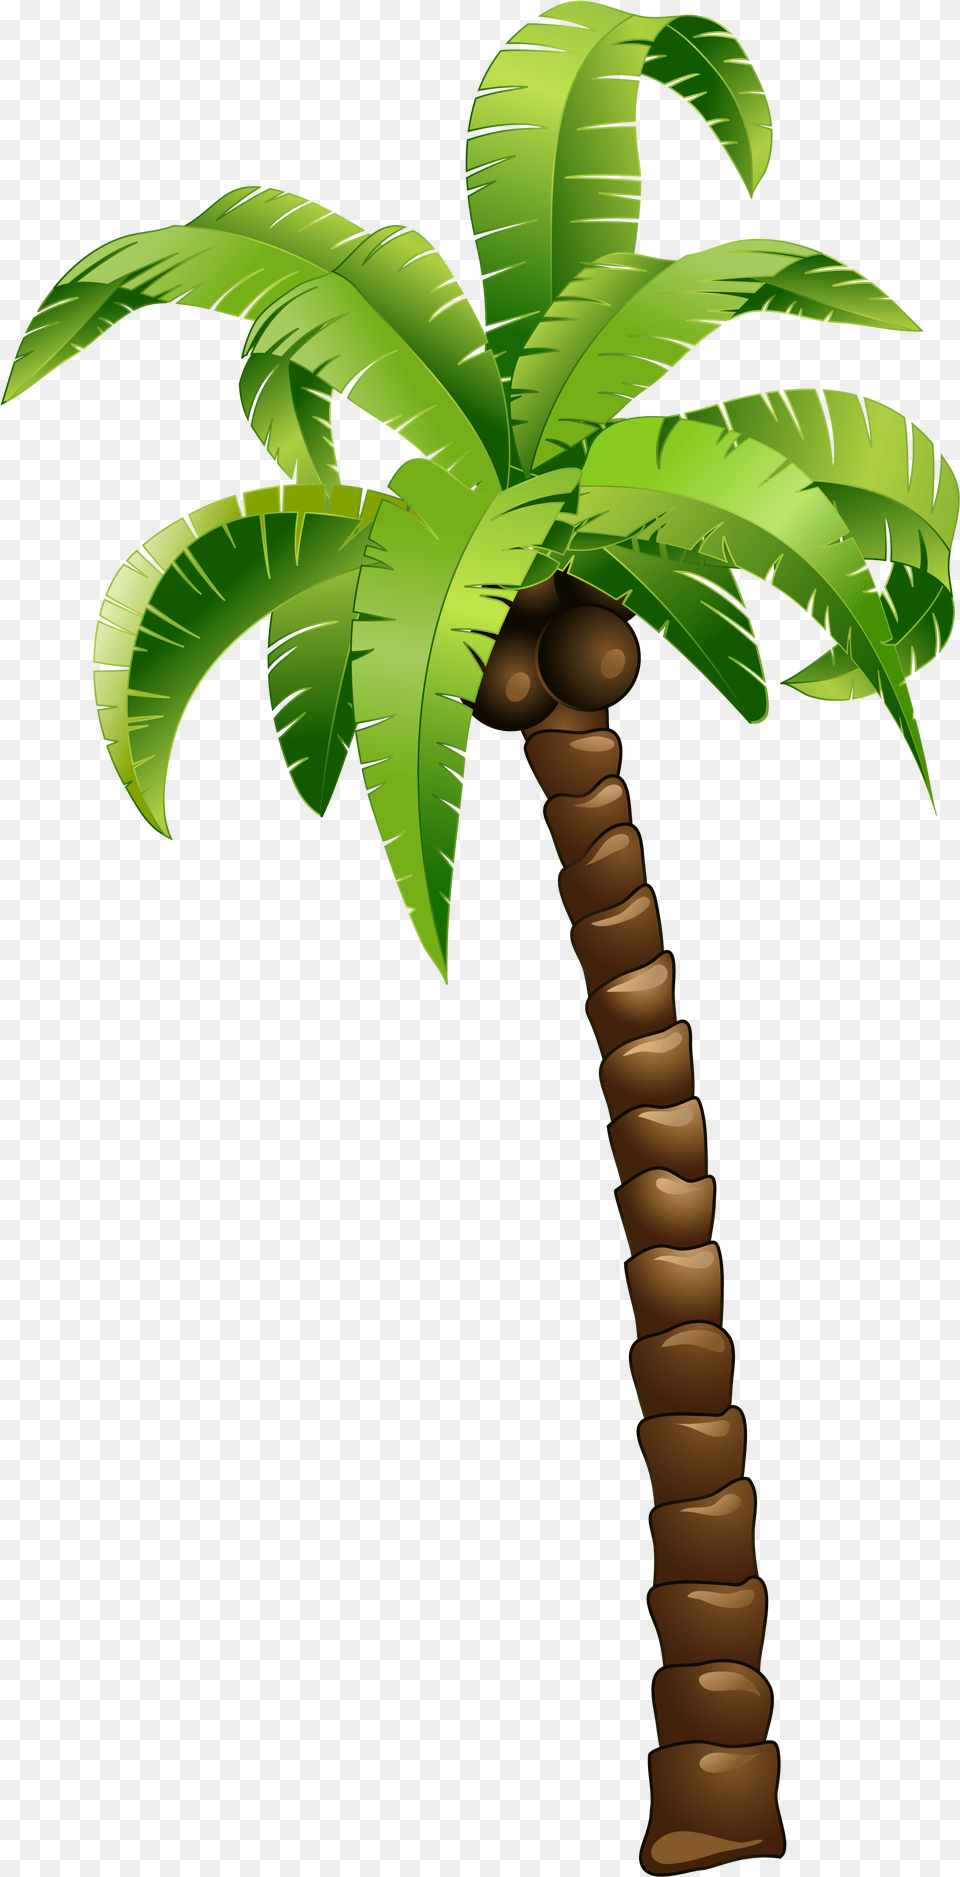 Cartoon Green Coconut Tree Cartoon Palm Tree Coconut Tree Cartoon, Palm Tree, Plant, Leaf Png